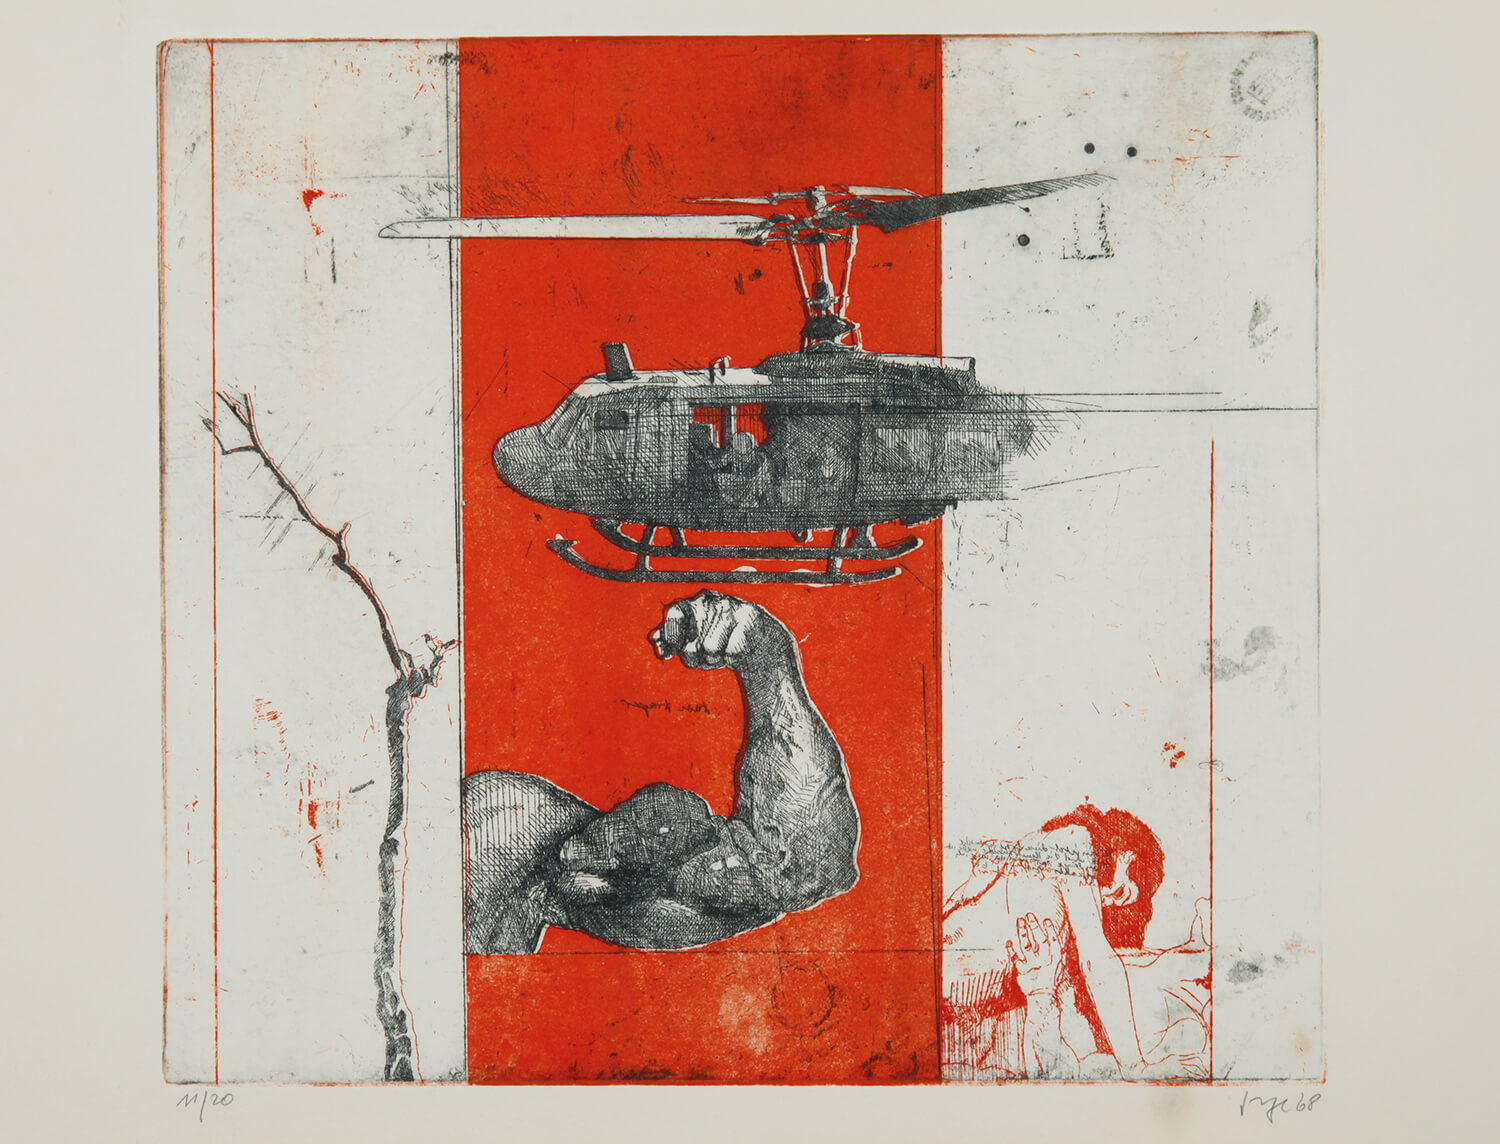 Peter Sommer, Heißer Sommer II, 1967, Farbradierung, Auflage 20, Bild: 40 x 45 cm, Blatt: 75,5 x 53,8 cm (nur zusammen mit Heißer Sommer I + III)